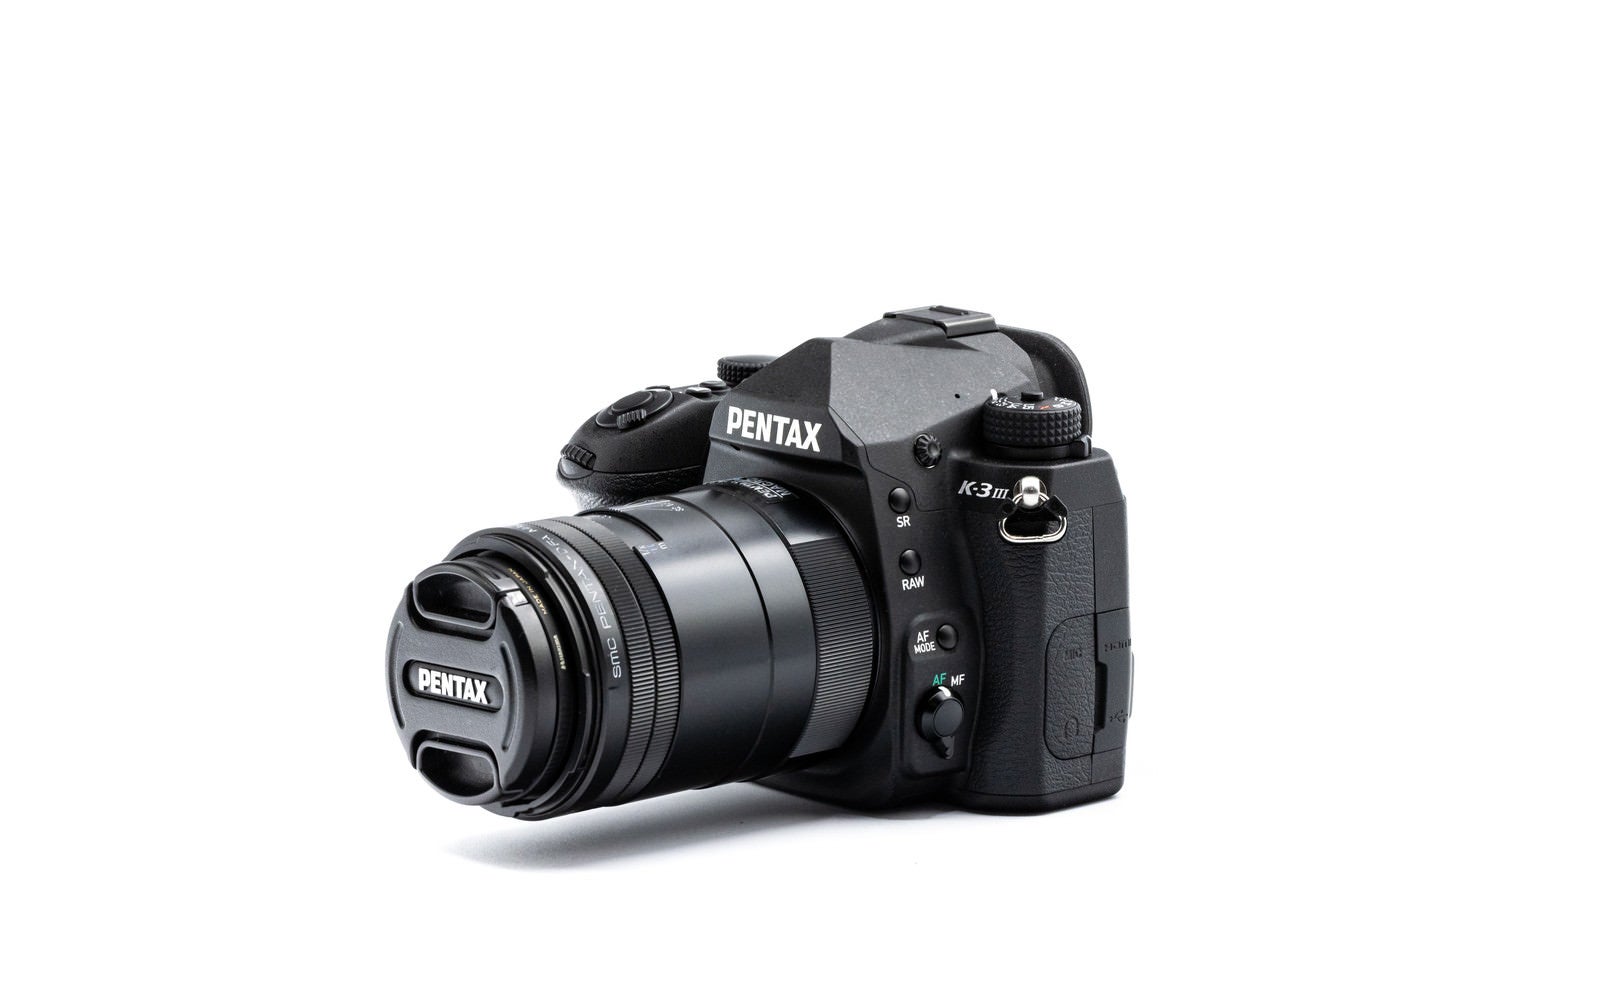 「一眼レフカメラ PENTAX K-3MarkⅢに100mmマクロレンズを装着した様子」の写真